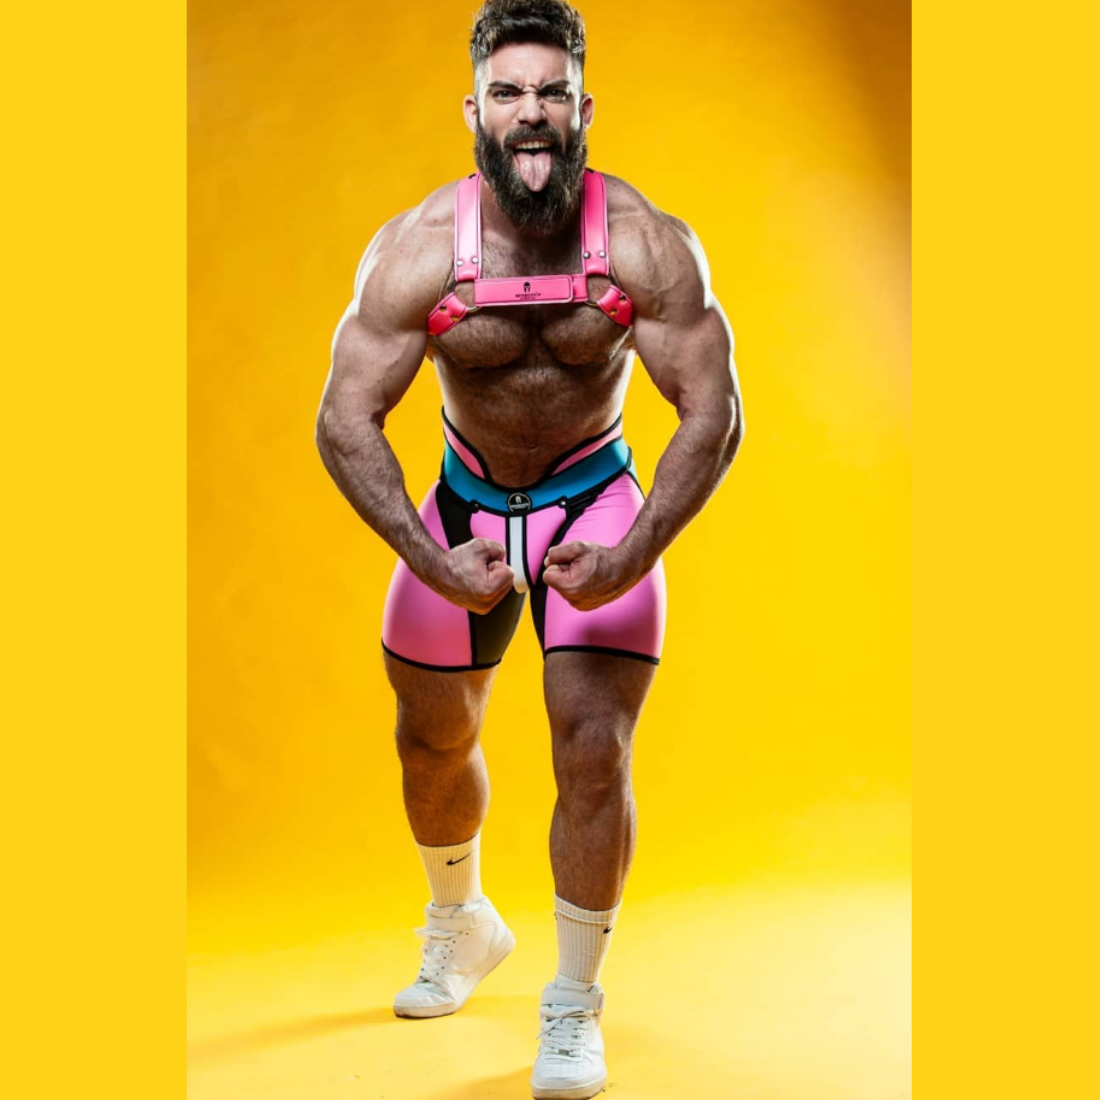 Unieke roze short met hoge tailleband en zwarte, blauwe en witte accenten, ontworpen door het Italiaanse modehuis Sparta’s Harness perfect voor gay mannen en te koop bij Flavourez.